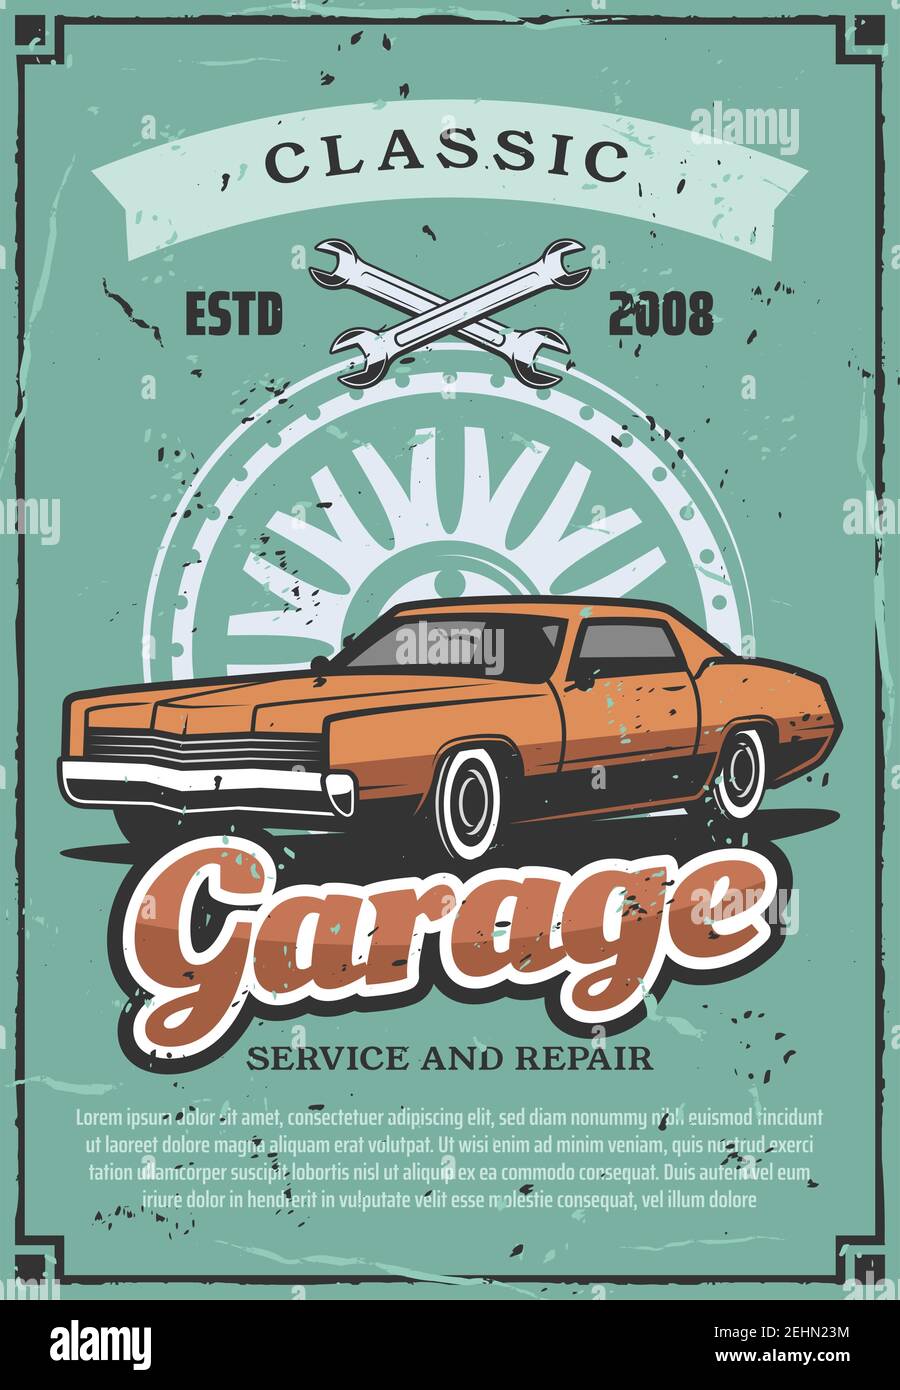 Garage oder Autoservice vintage retro Poster, Kfz-Shop oder Mechaniker Reparatur-Center. Vector altes Auto, Schlüssel und Rad Silhouette. Fahrzeugmechanis Stock Vektor